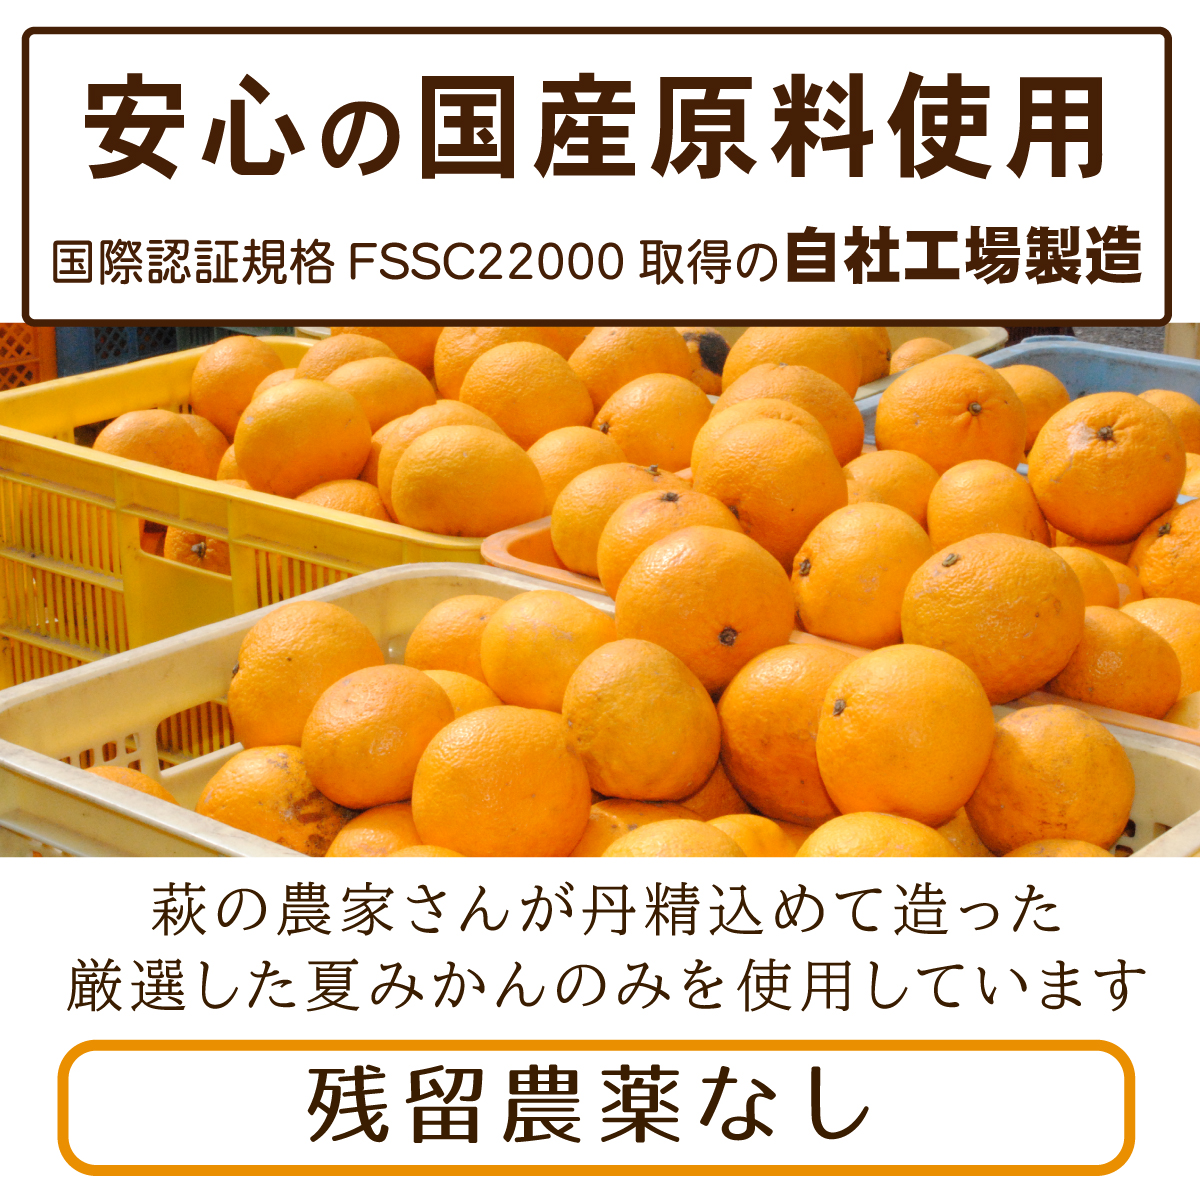 安心の国産原料使用、国際認証規格FSSC22000取得の自社工場製造。残留農薬なし。